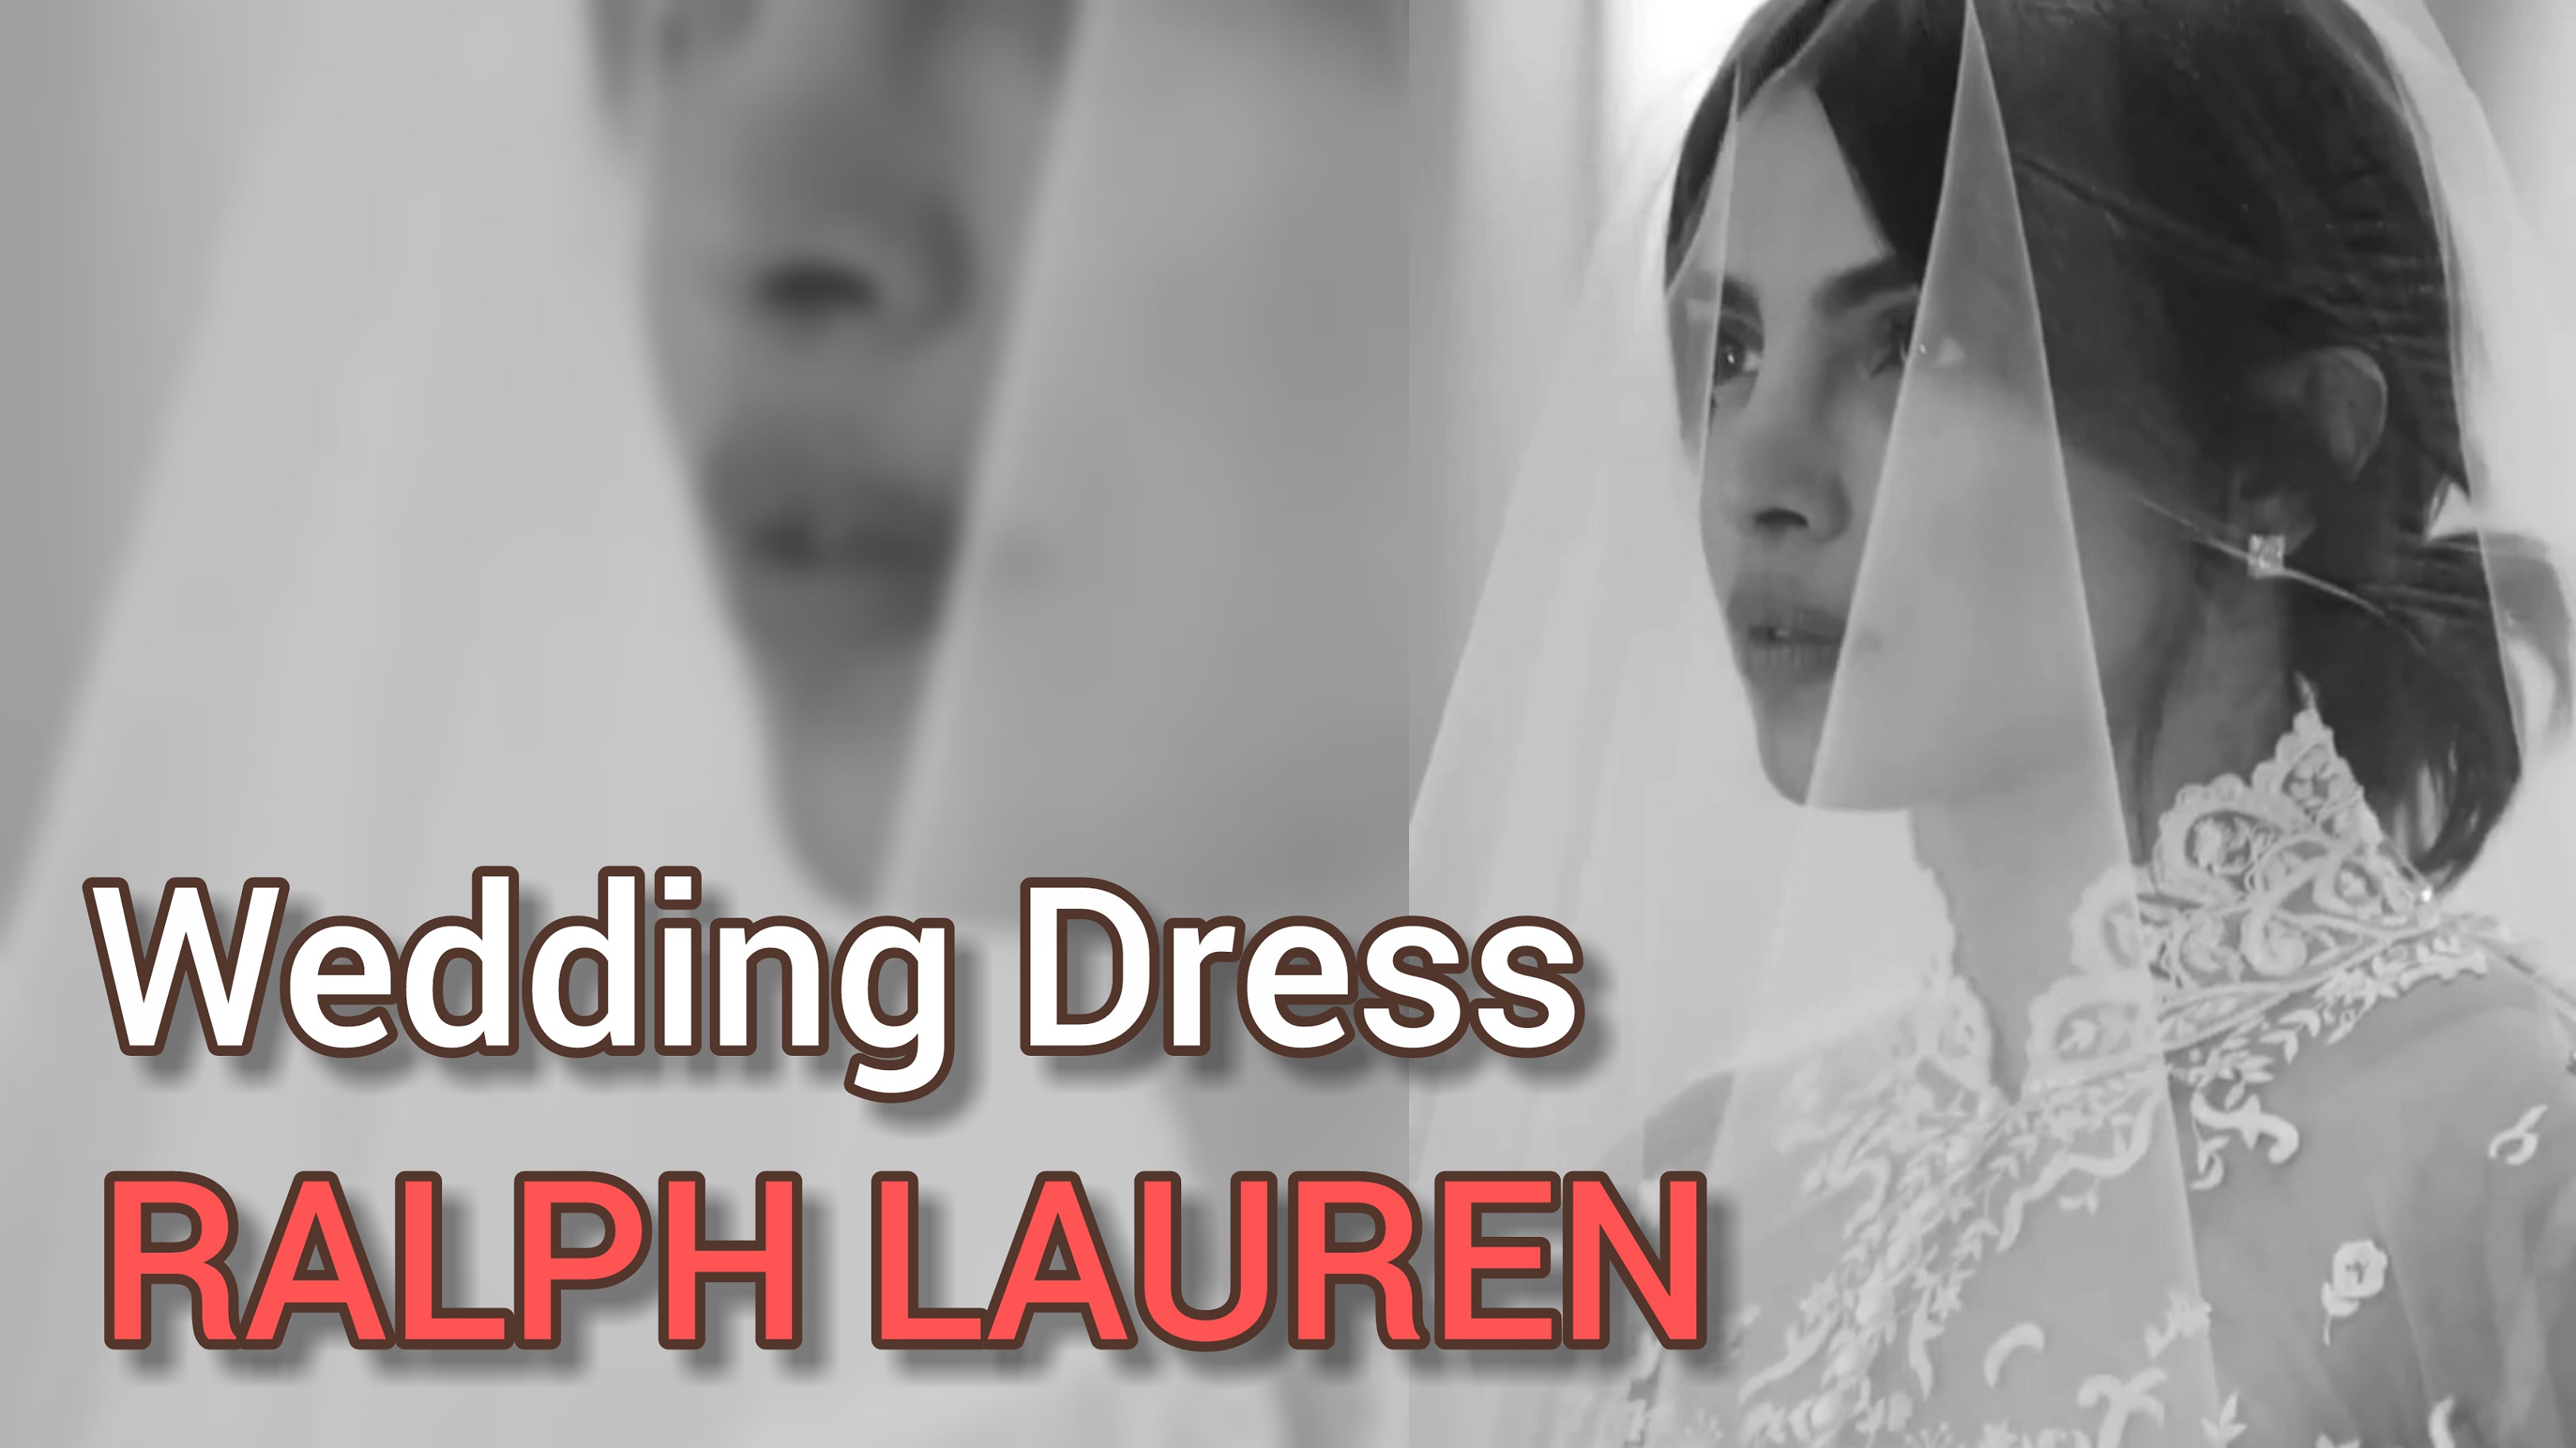 RALPH LAUREN. Wedding Dress 